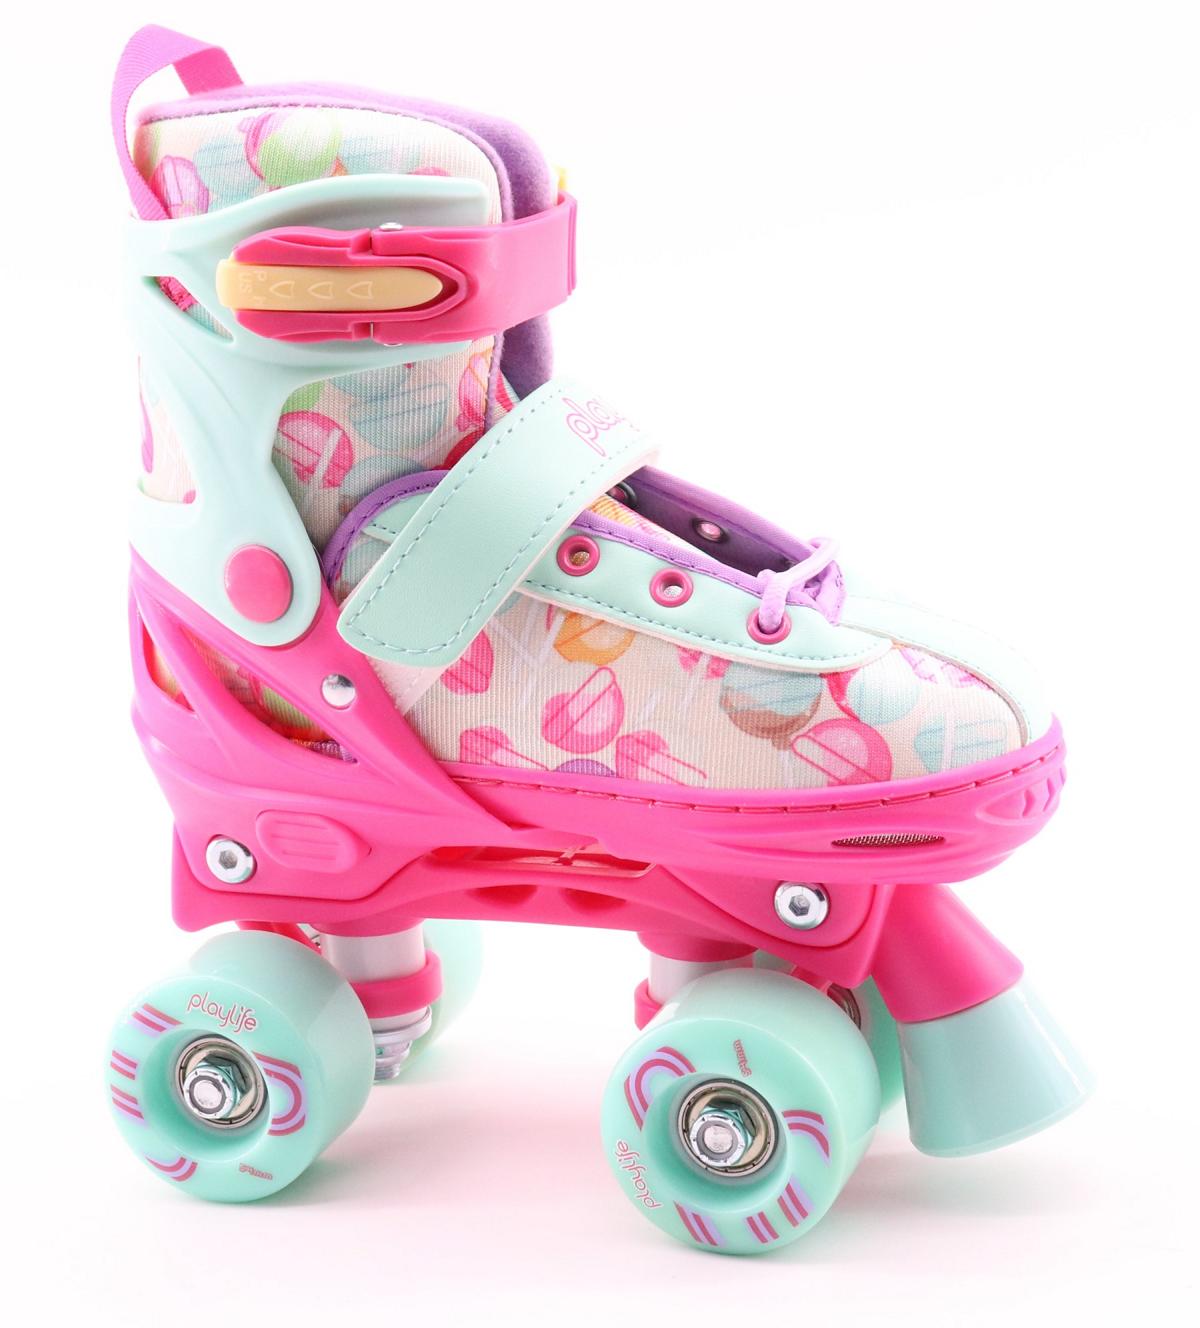 Playlife Lollipop Adjustable Kids Roller Skates